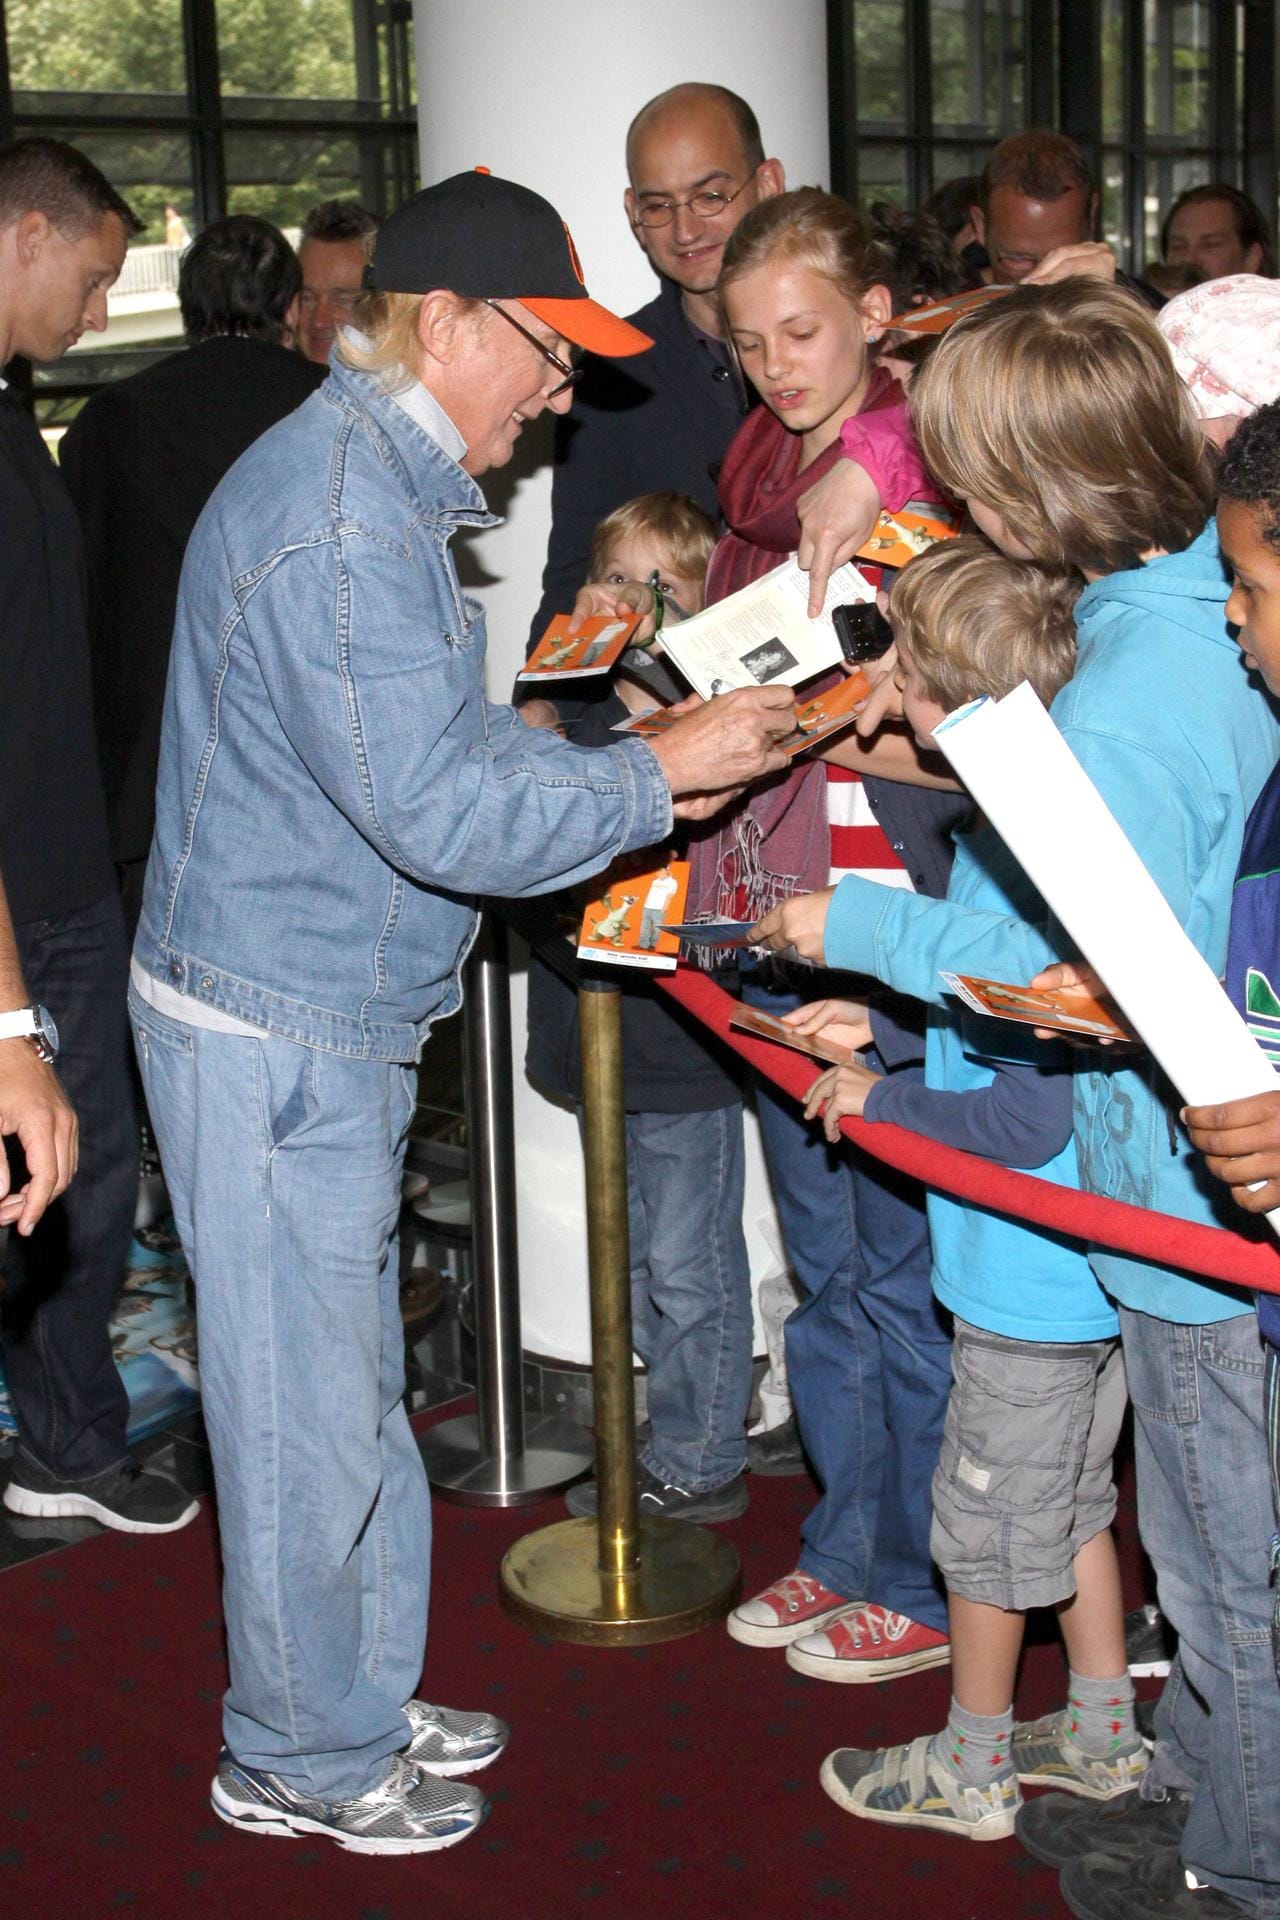 Juli 2012: Bei einer Kino-Premiere waren seine größten Fans die Kleinsten. Hier wollte keiner ohne ein Autogramm nach Hause gehen.